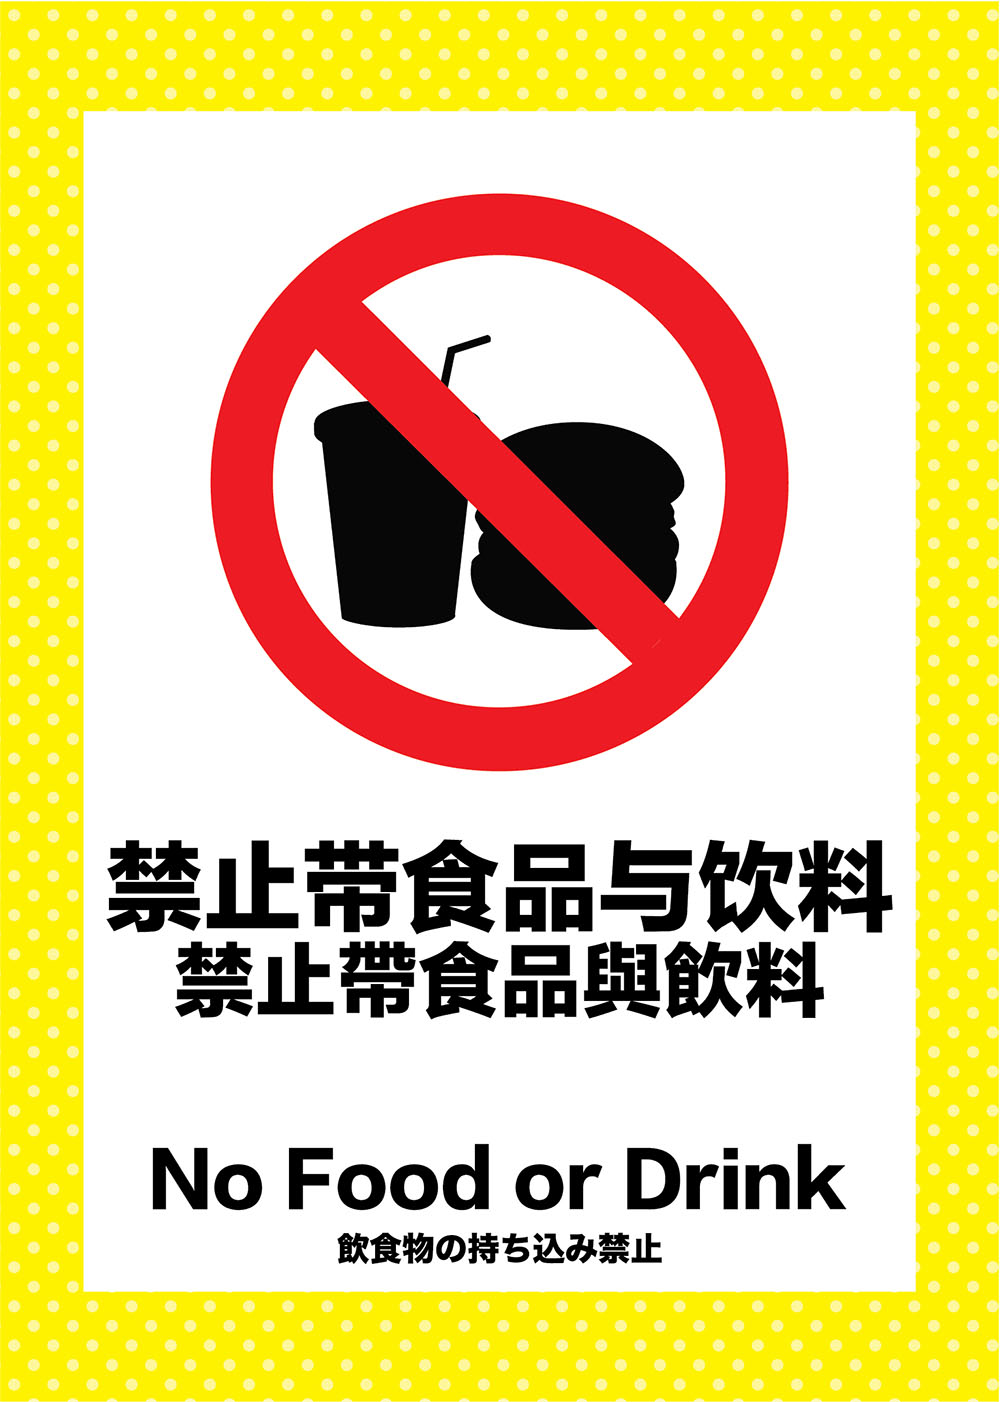 请勿饮食